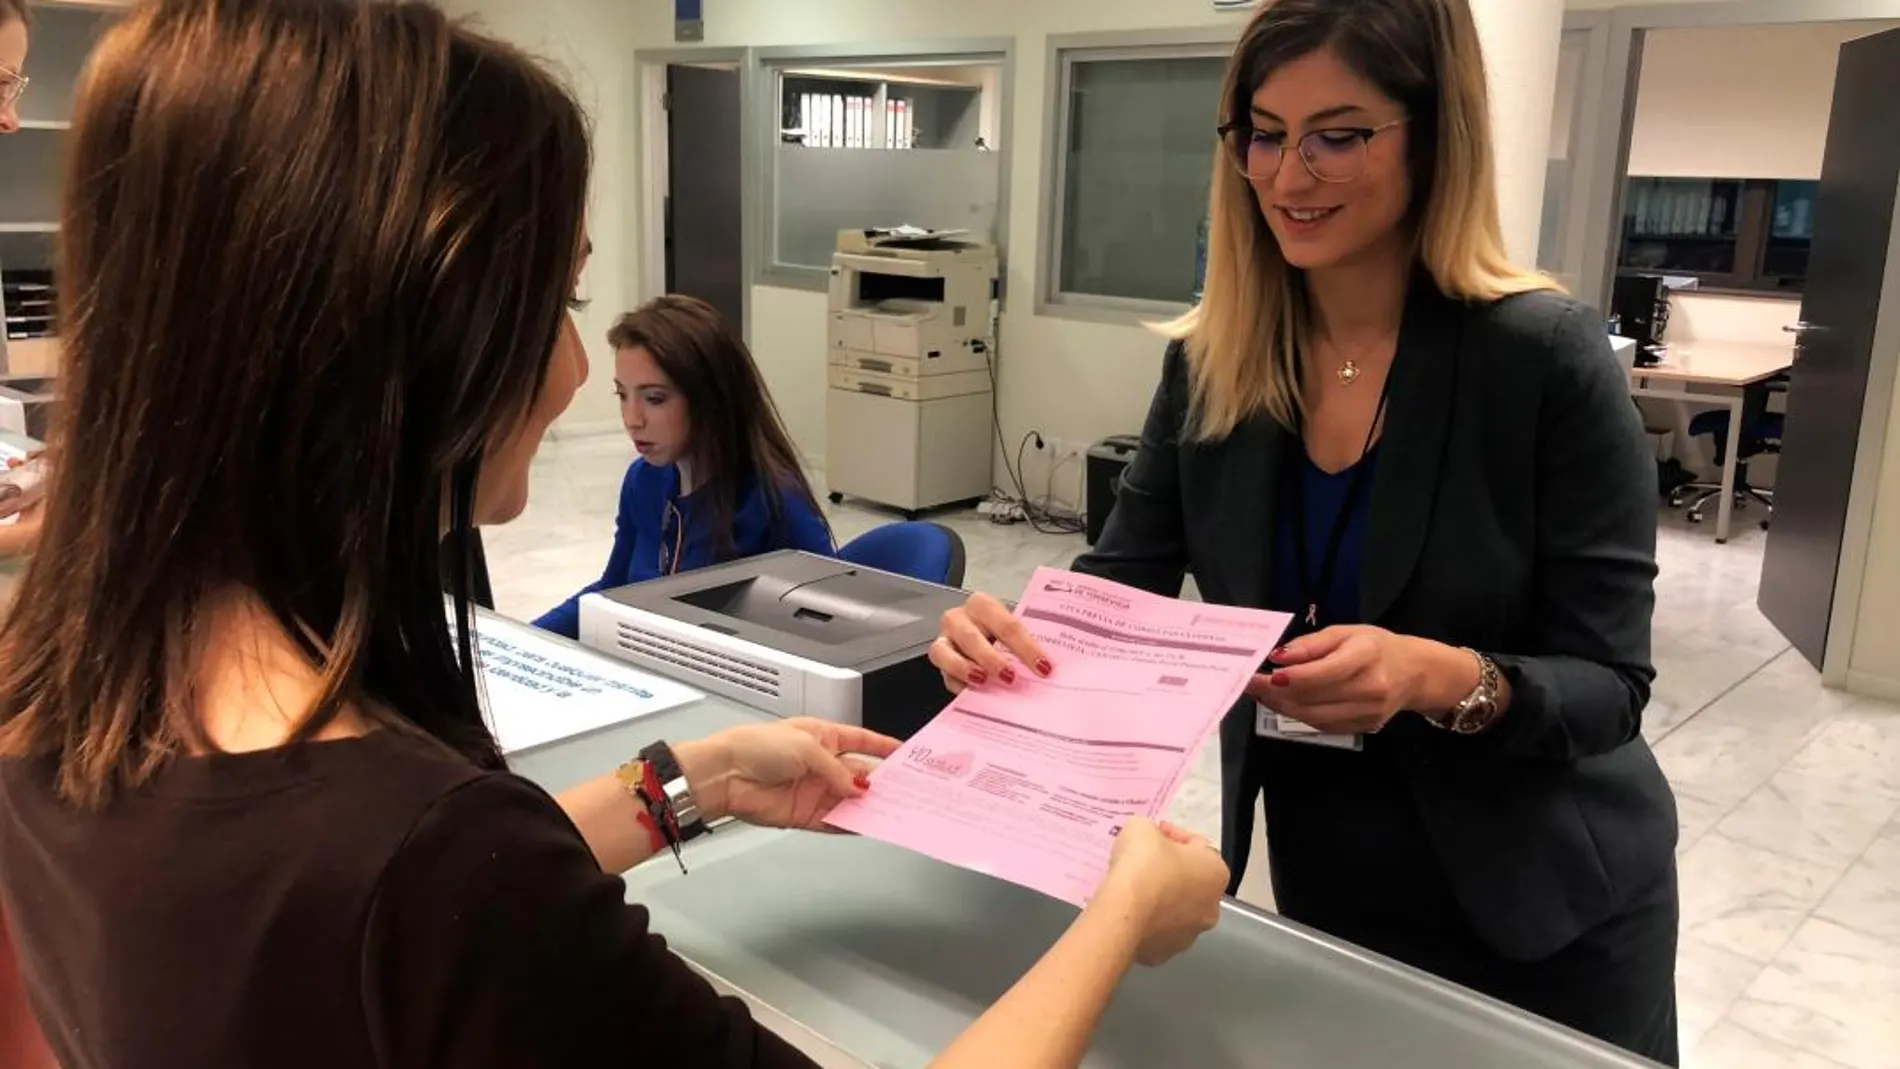 Durante todo el día de hoy, el Hospital de Torrevieja imprimirá los documentos y recetas en color de rosa